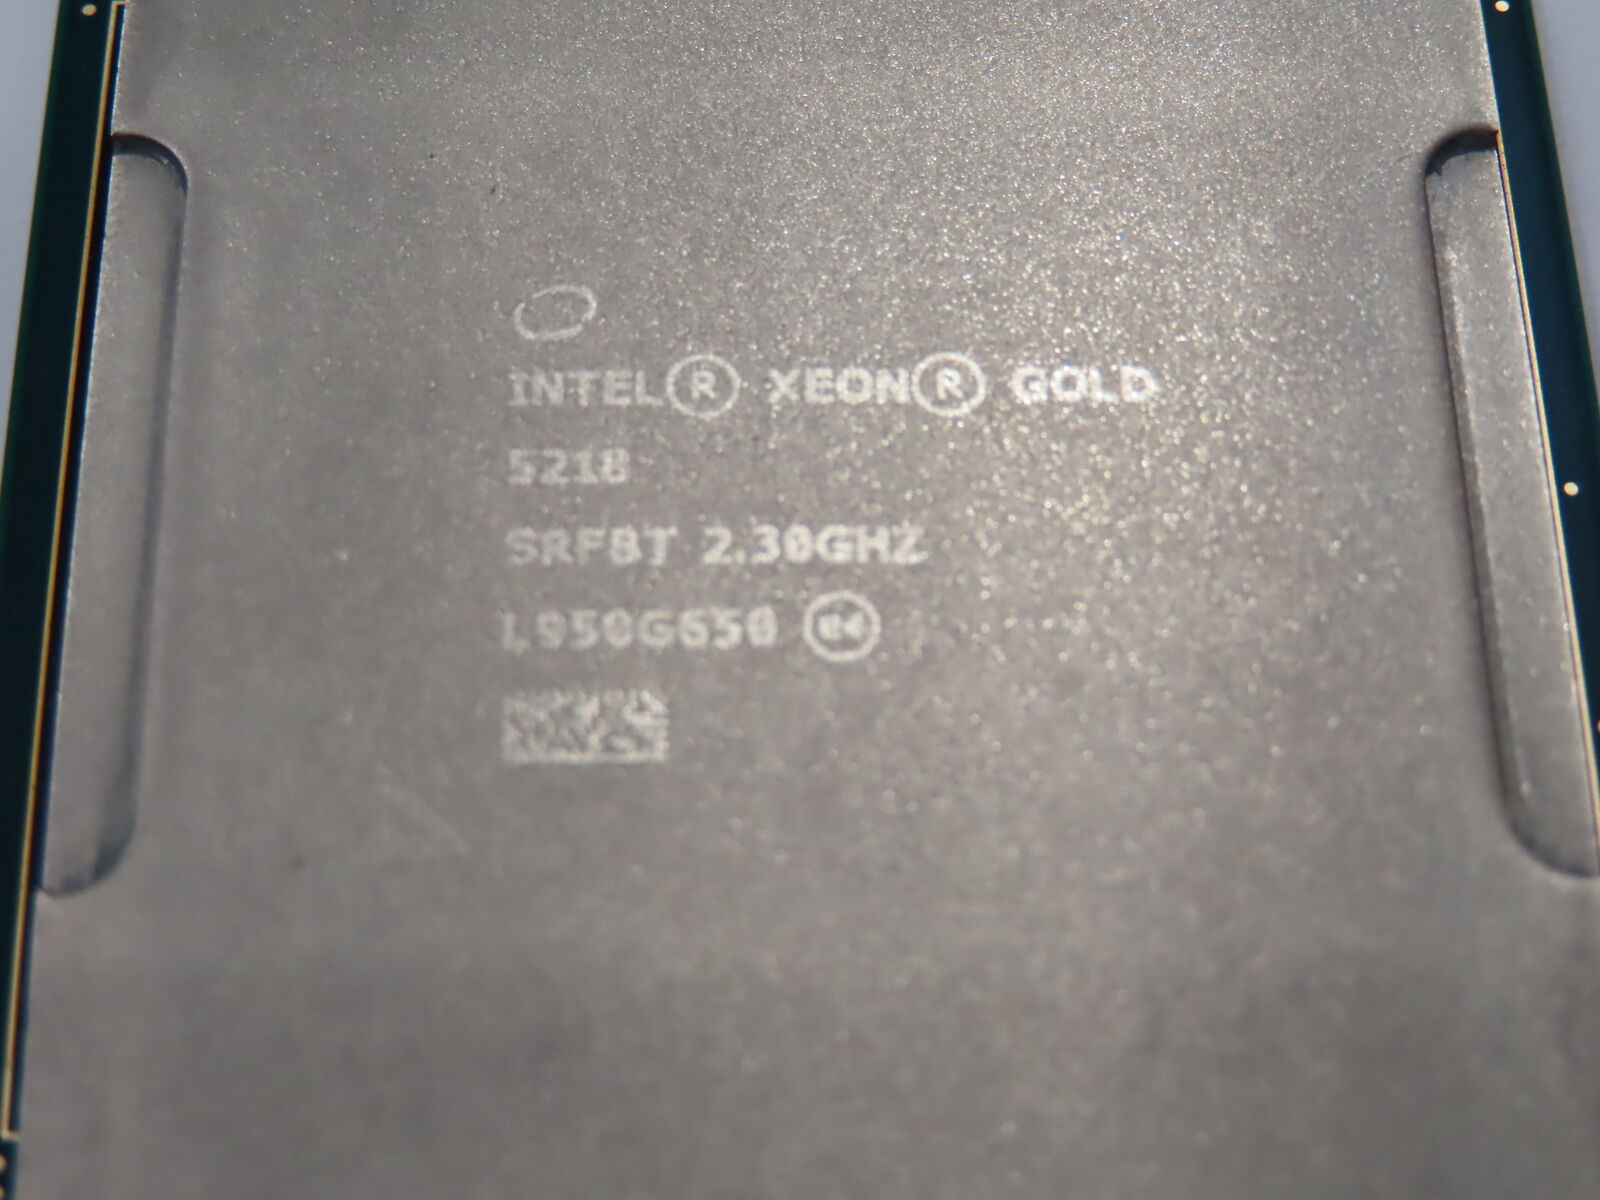 Intel Xeon Gold 5218 2.3GHZ 16-Core CPU / PROCESSOR ____ SRFBT